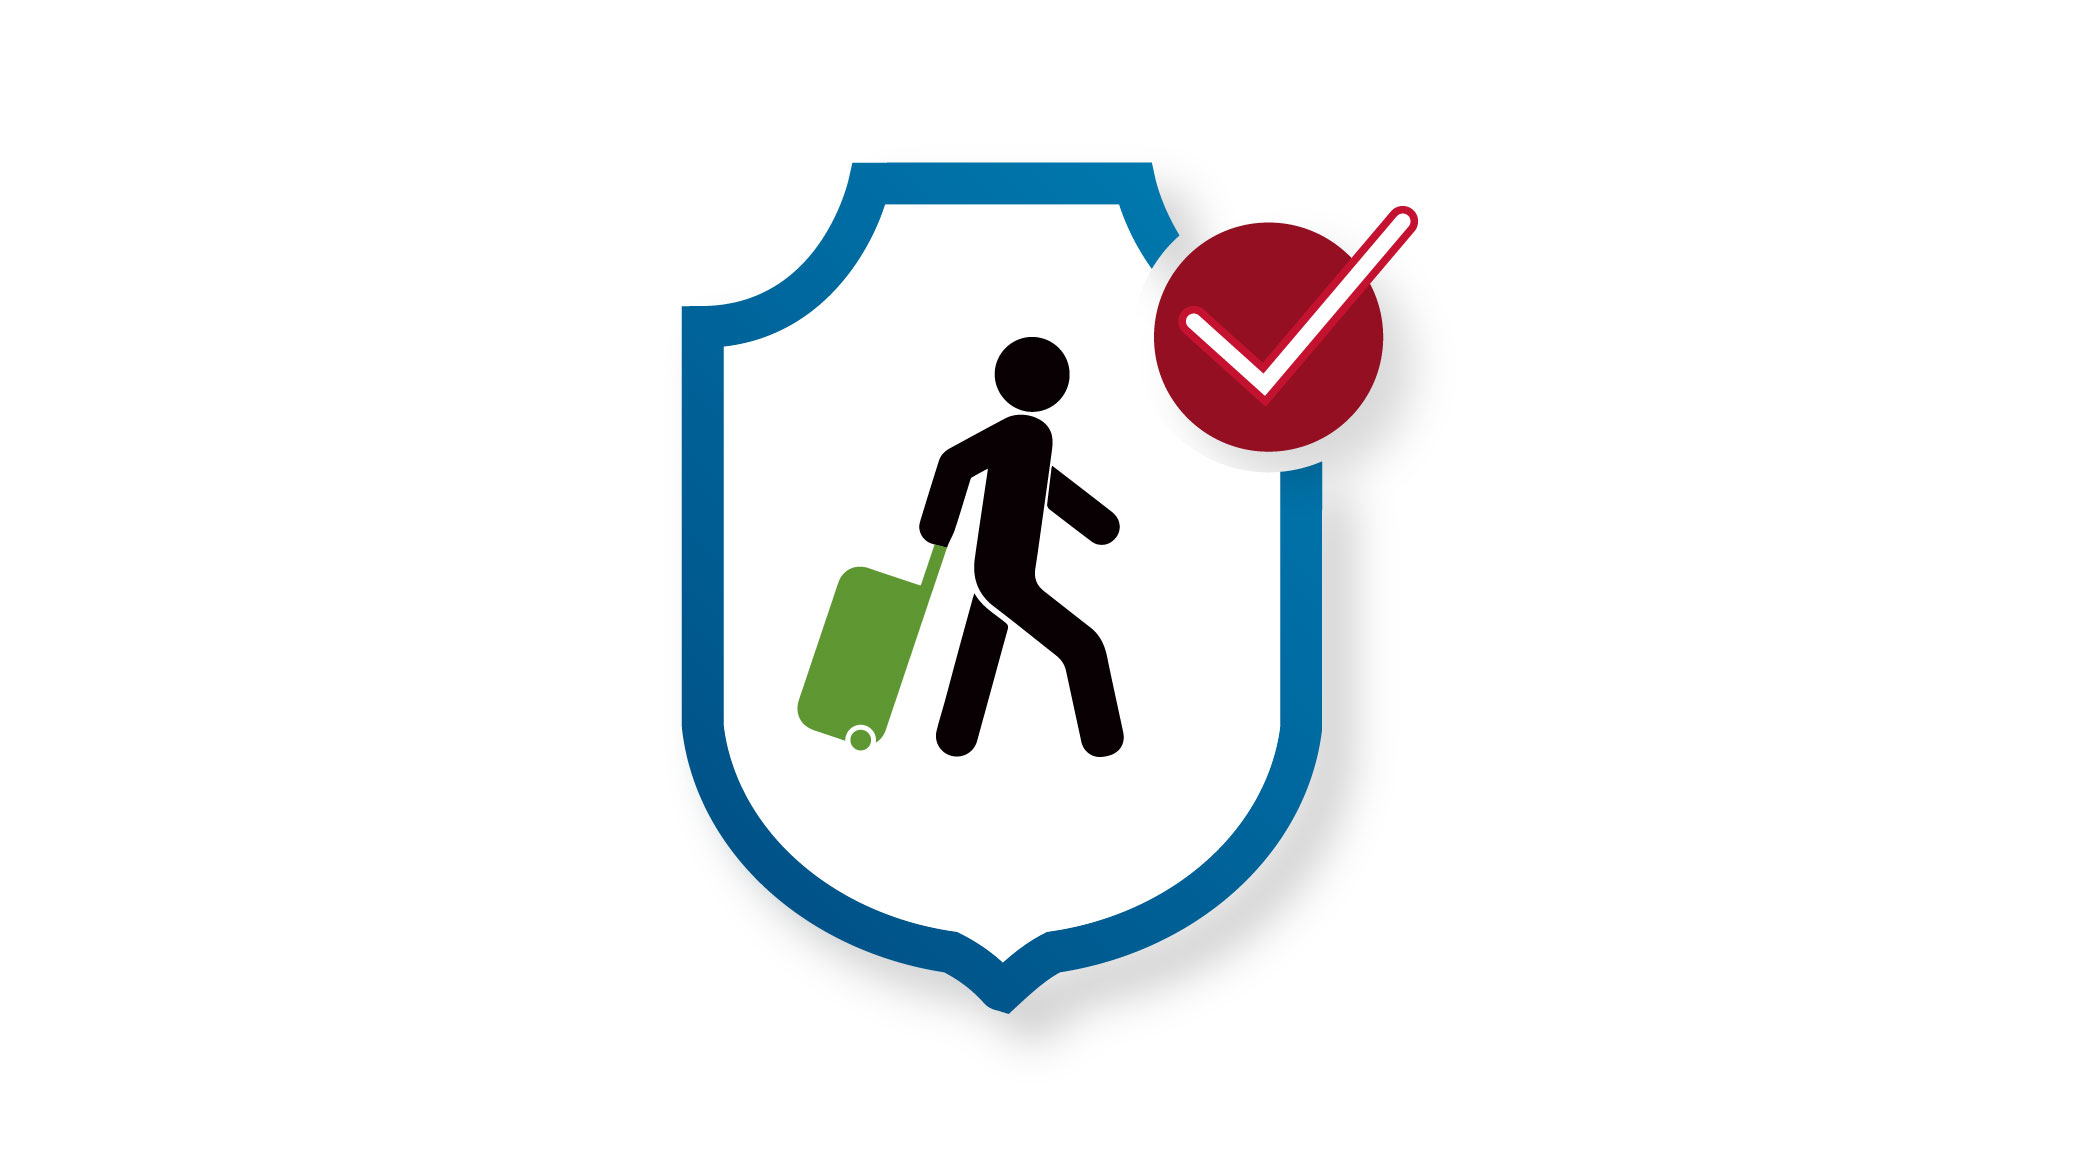 Trusted Traveler Program logo